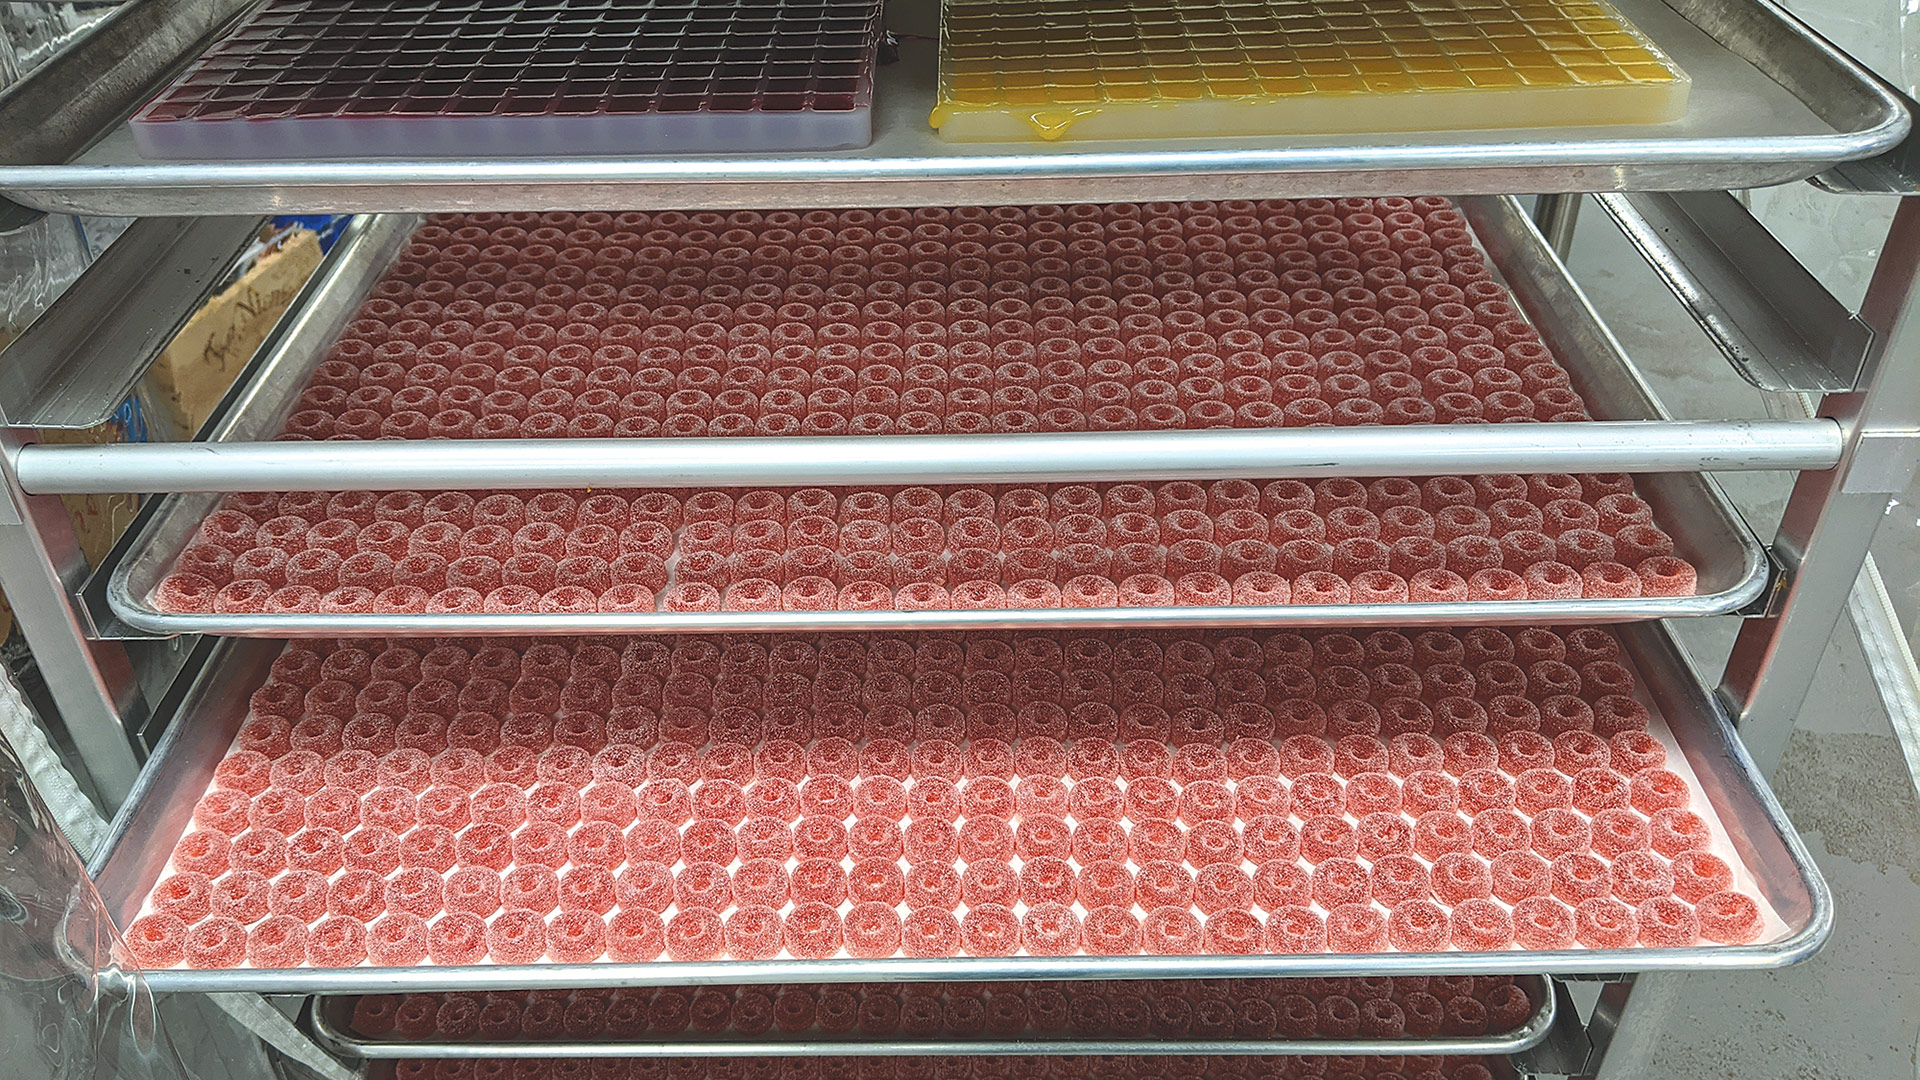 Trays of CBD-infused gummies